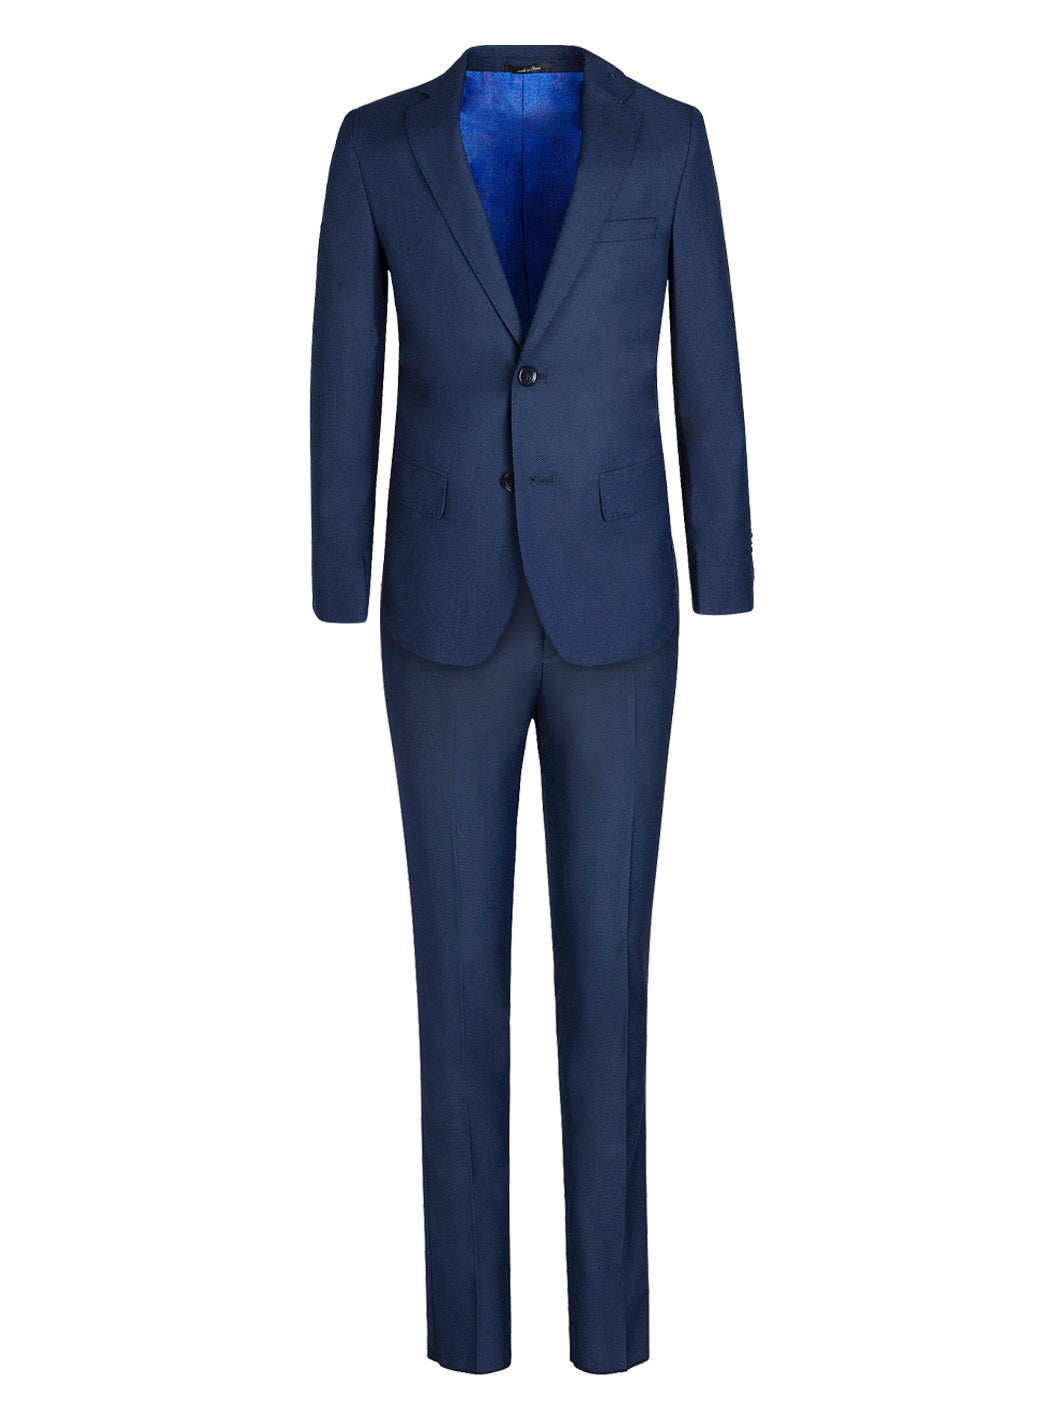 Insignia Blue Pique Suit